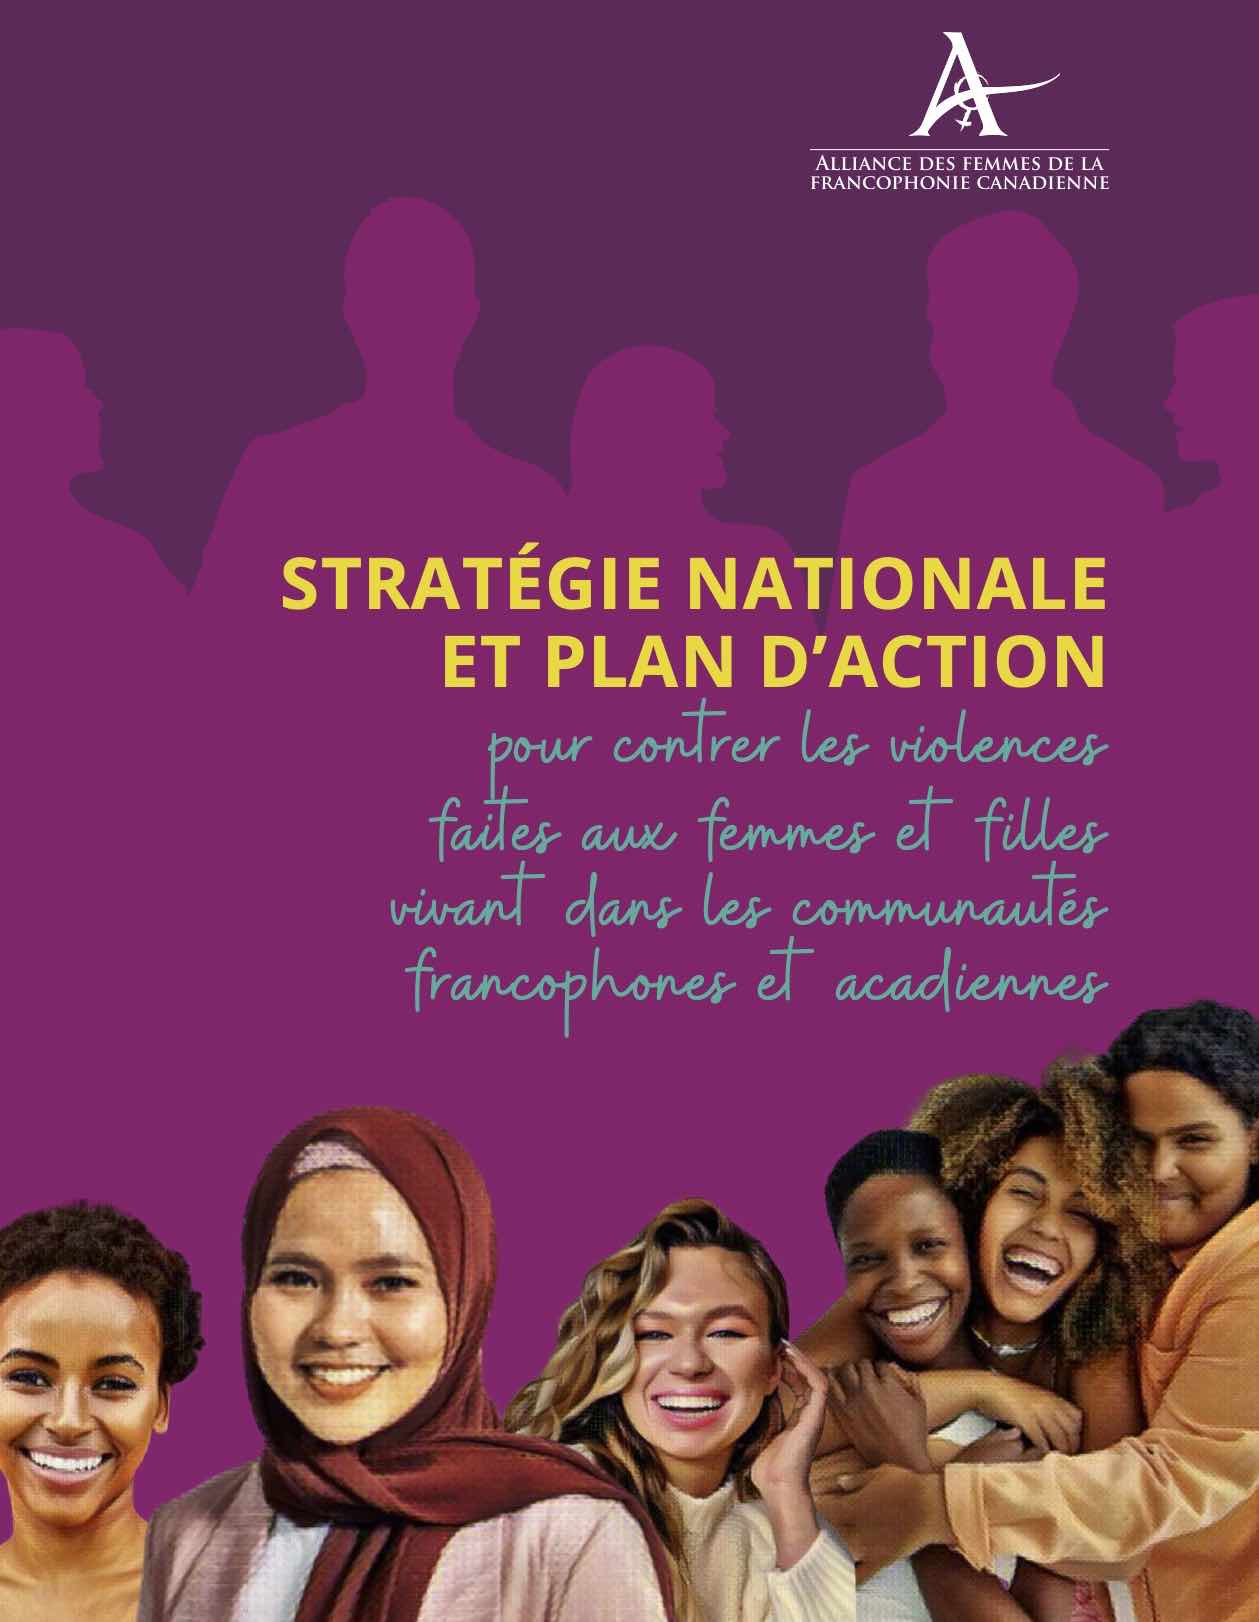 Les organismes membres de l’AFFC ont travaillé pendant plus d’un an pour élaborer une stratégie nationale et un plan d’action pour contrer la violence faite aux femmes et aux filles vivant dans les communautés francophones et acadiennes.